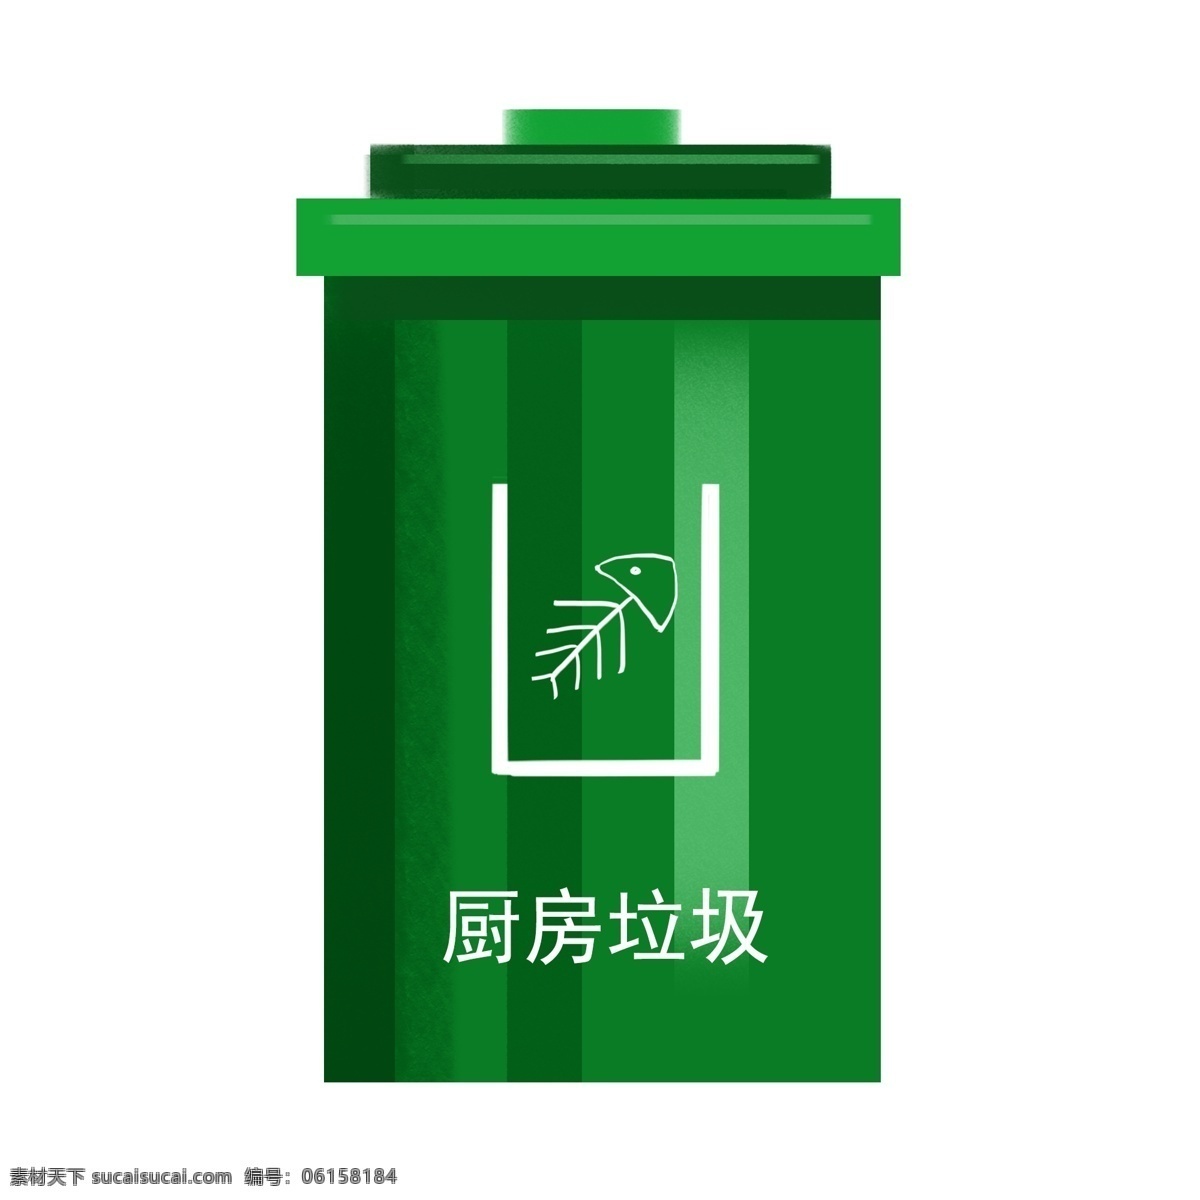 绿色 环保 垃圾桶 插画 绿色的垃圾桶 环保垃圾桶 手绘垃圾桶 卡通垃圾桶 垃圾桶装饰 垃圾桶插画